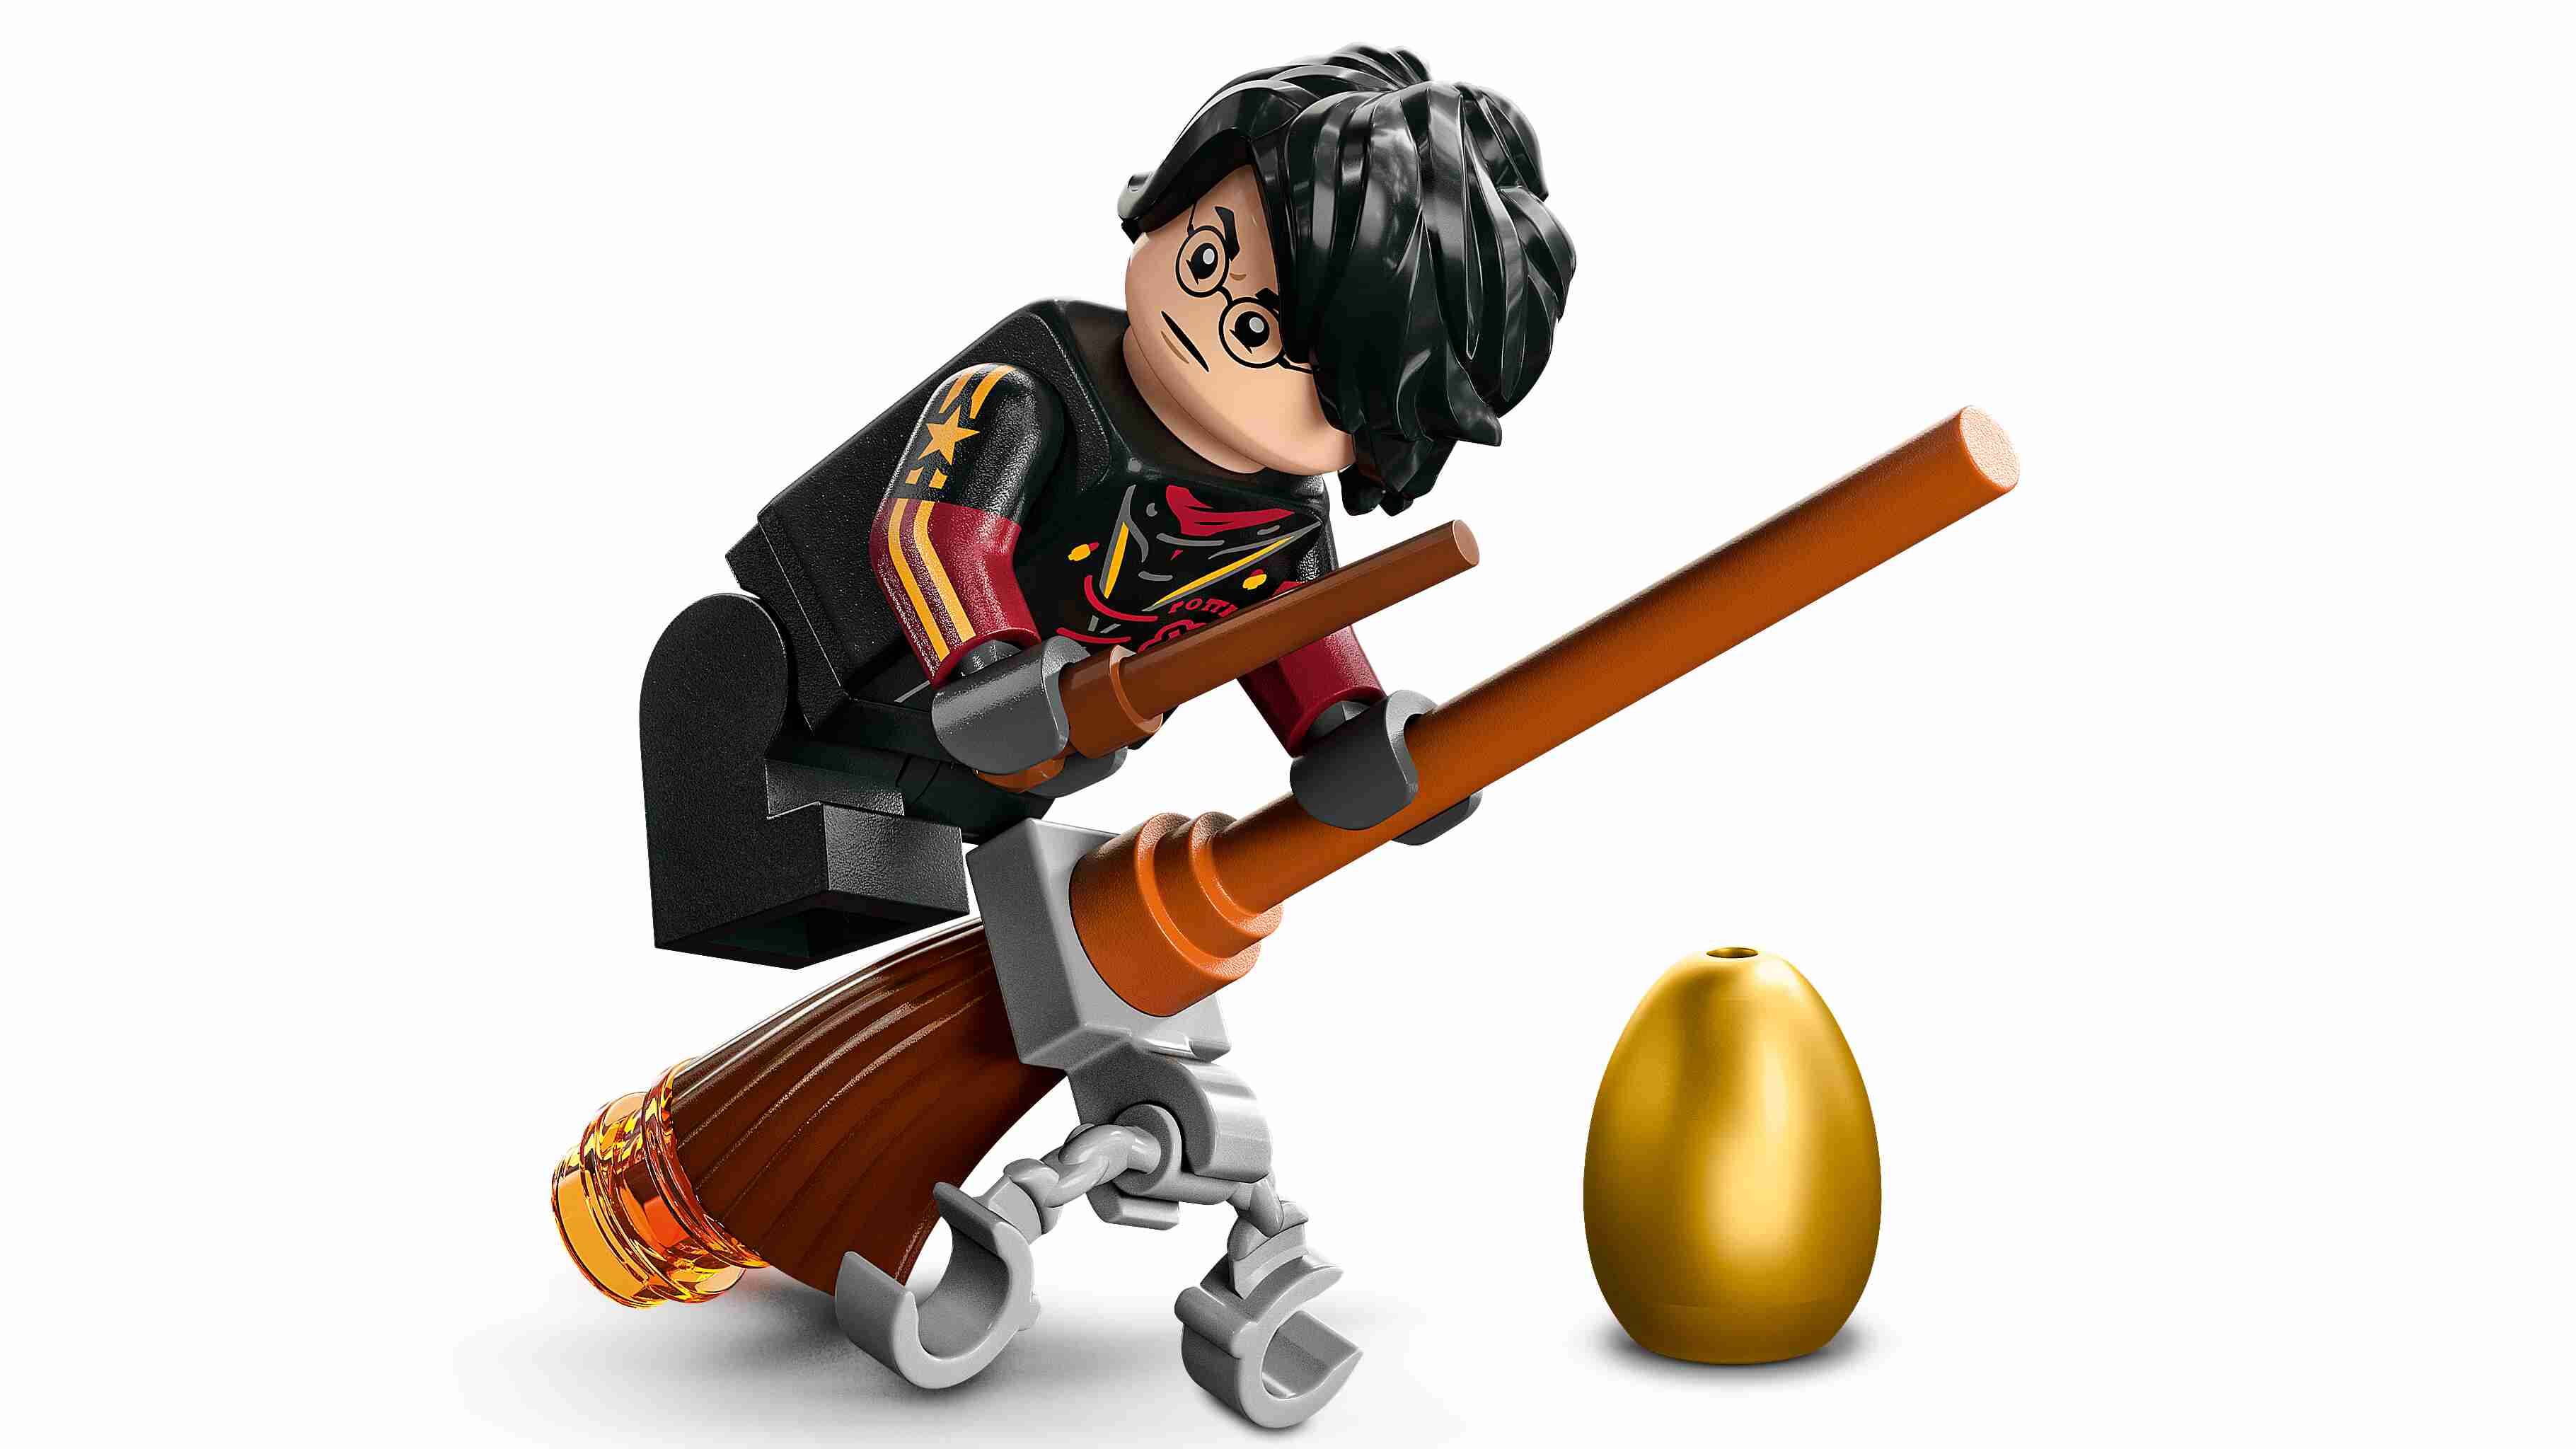 LEGO 76406 Harry Potter Ungarischer Hornschwanz, Drachen aus der Wizarding World